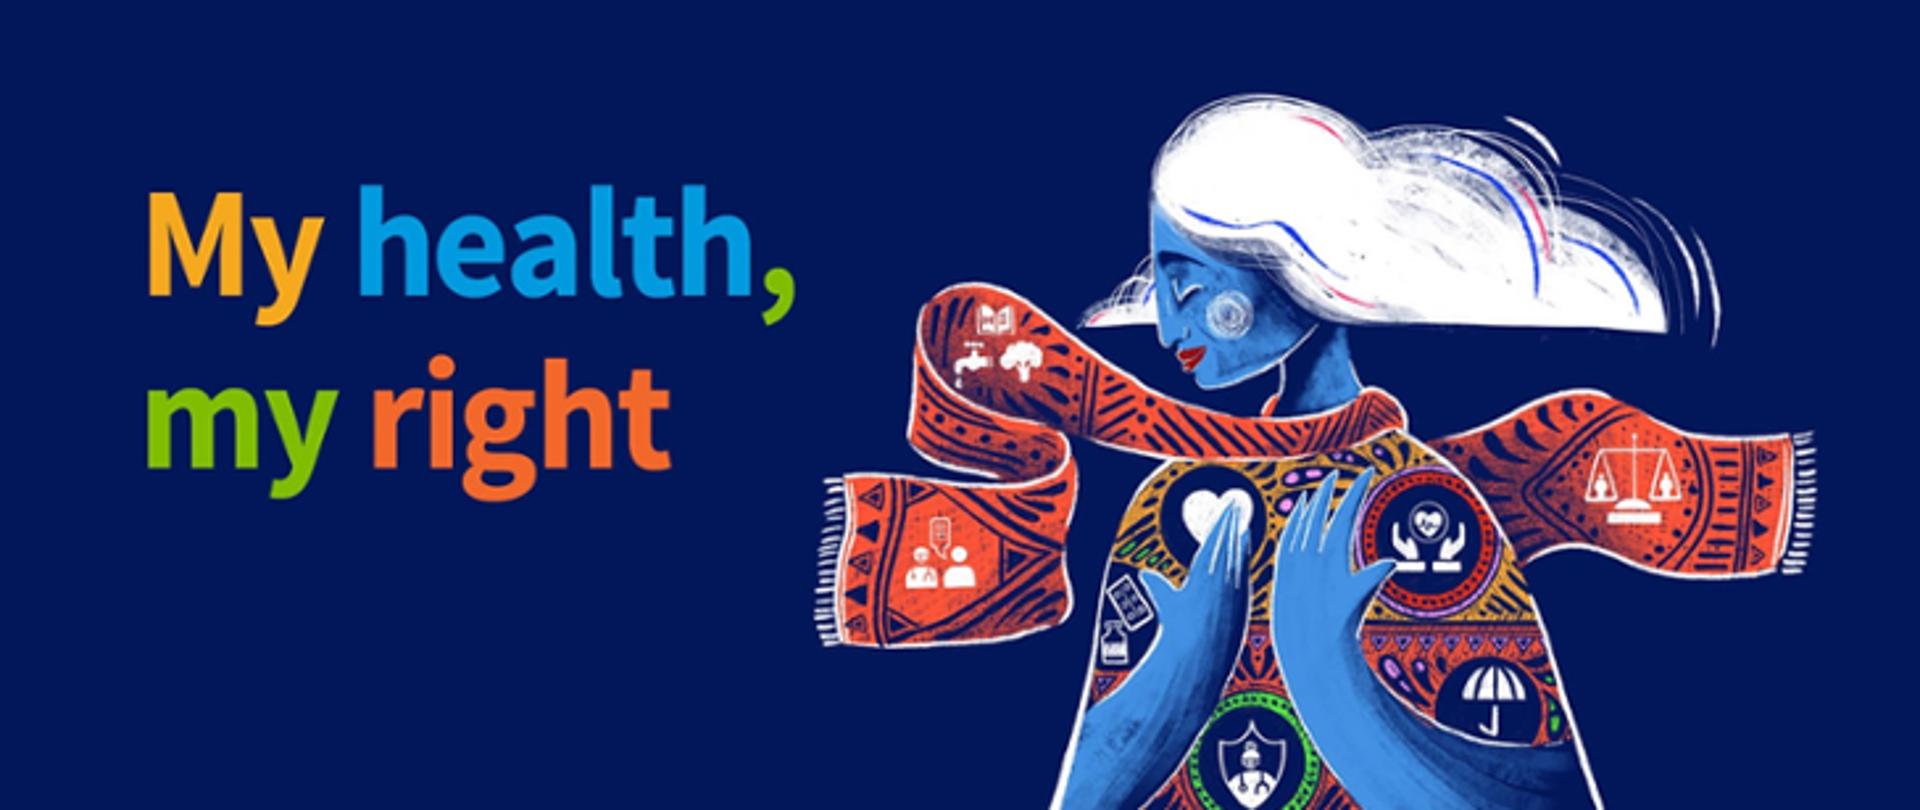 Kobieta na niebieskim tle i napis "My health, my right"